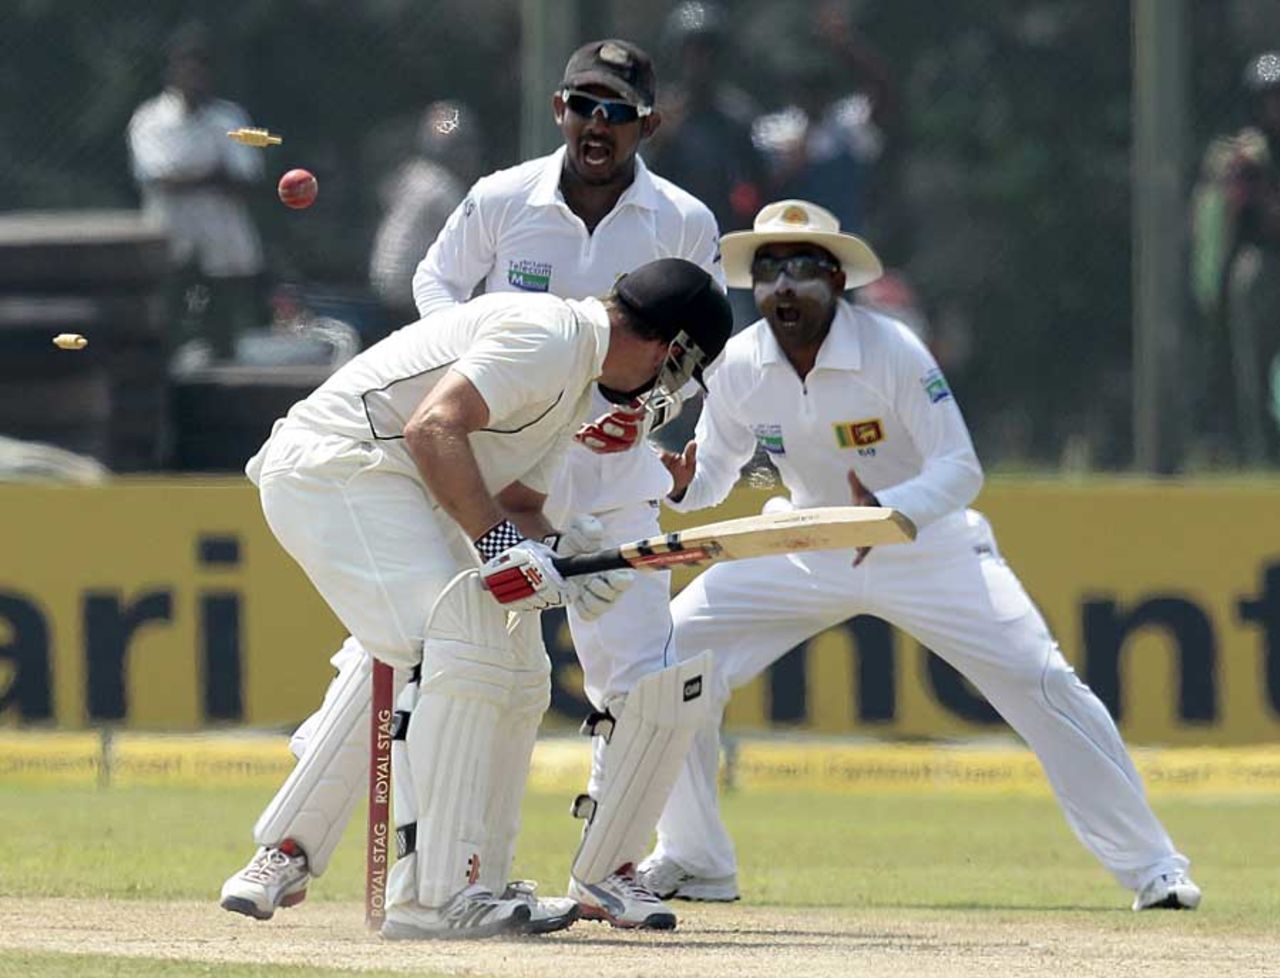 Daniel Flynn was bowled for 20, Sri Lanka v New Zealand, 1st Test, Galle, 3rd day, November 19, 2012